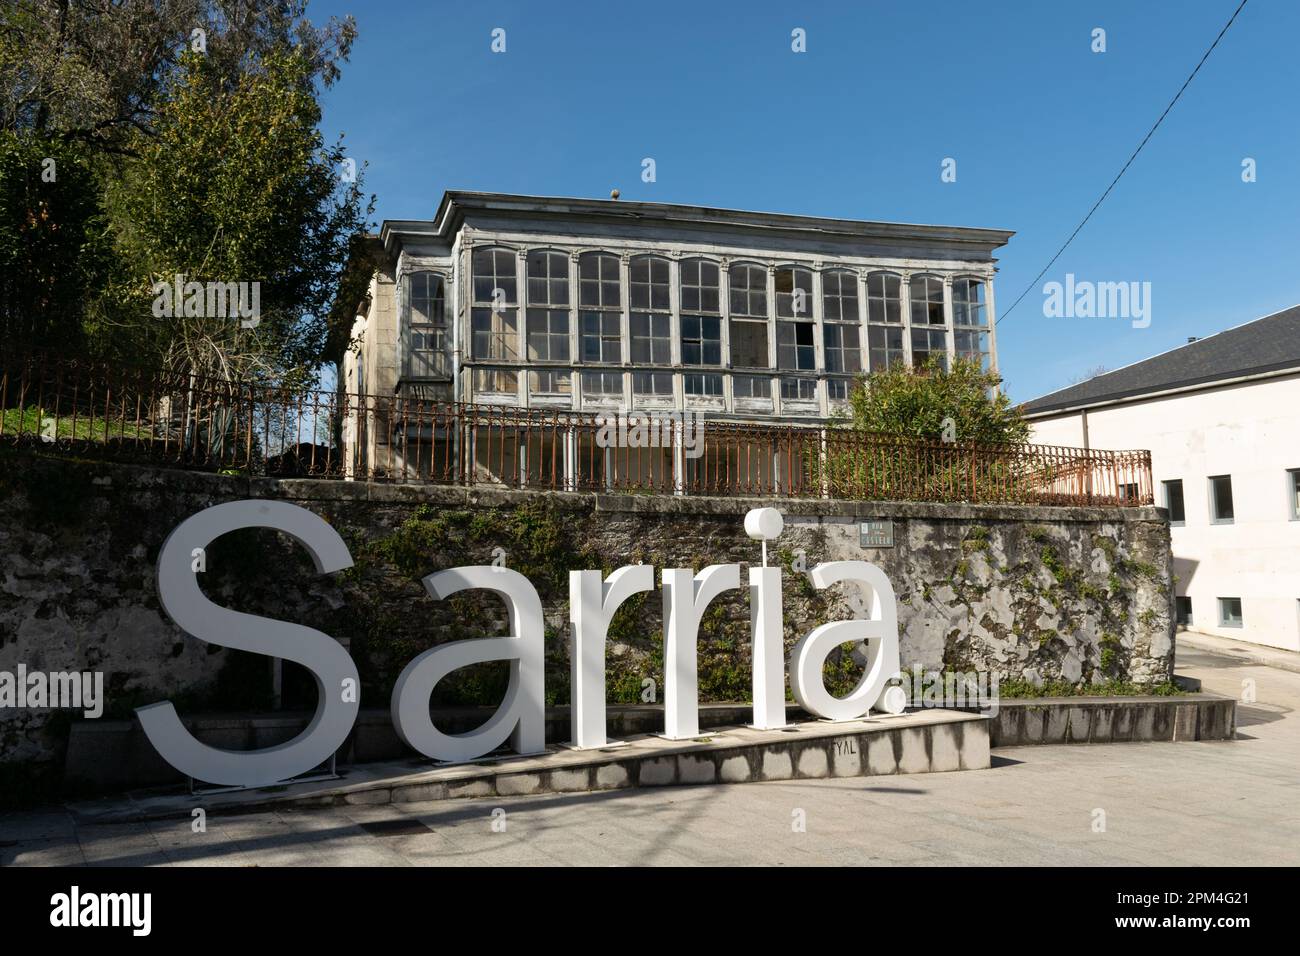 Panneau géant Sarria avec Galicien galeria sur la maison. Espagne Banque D'Images